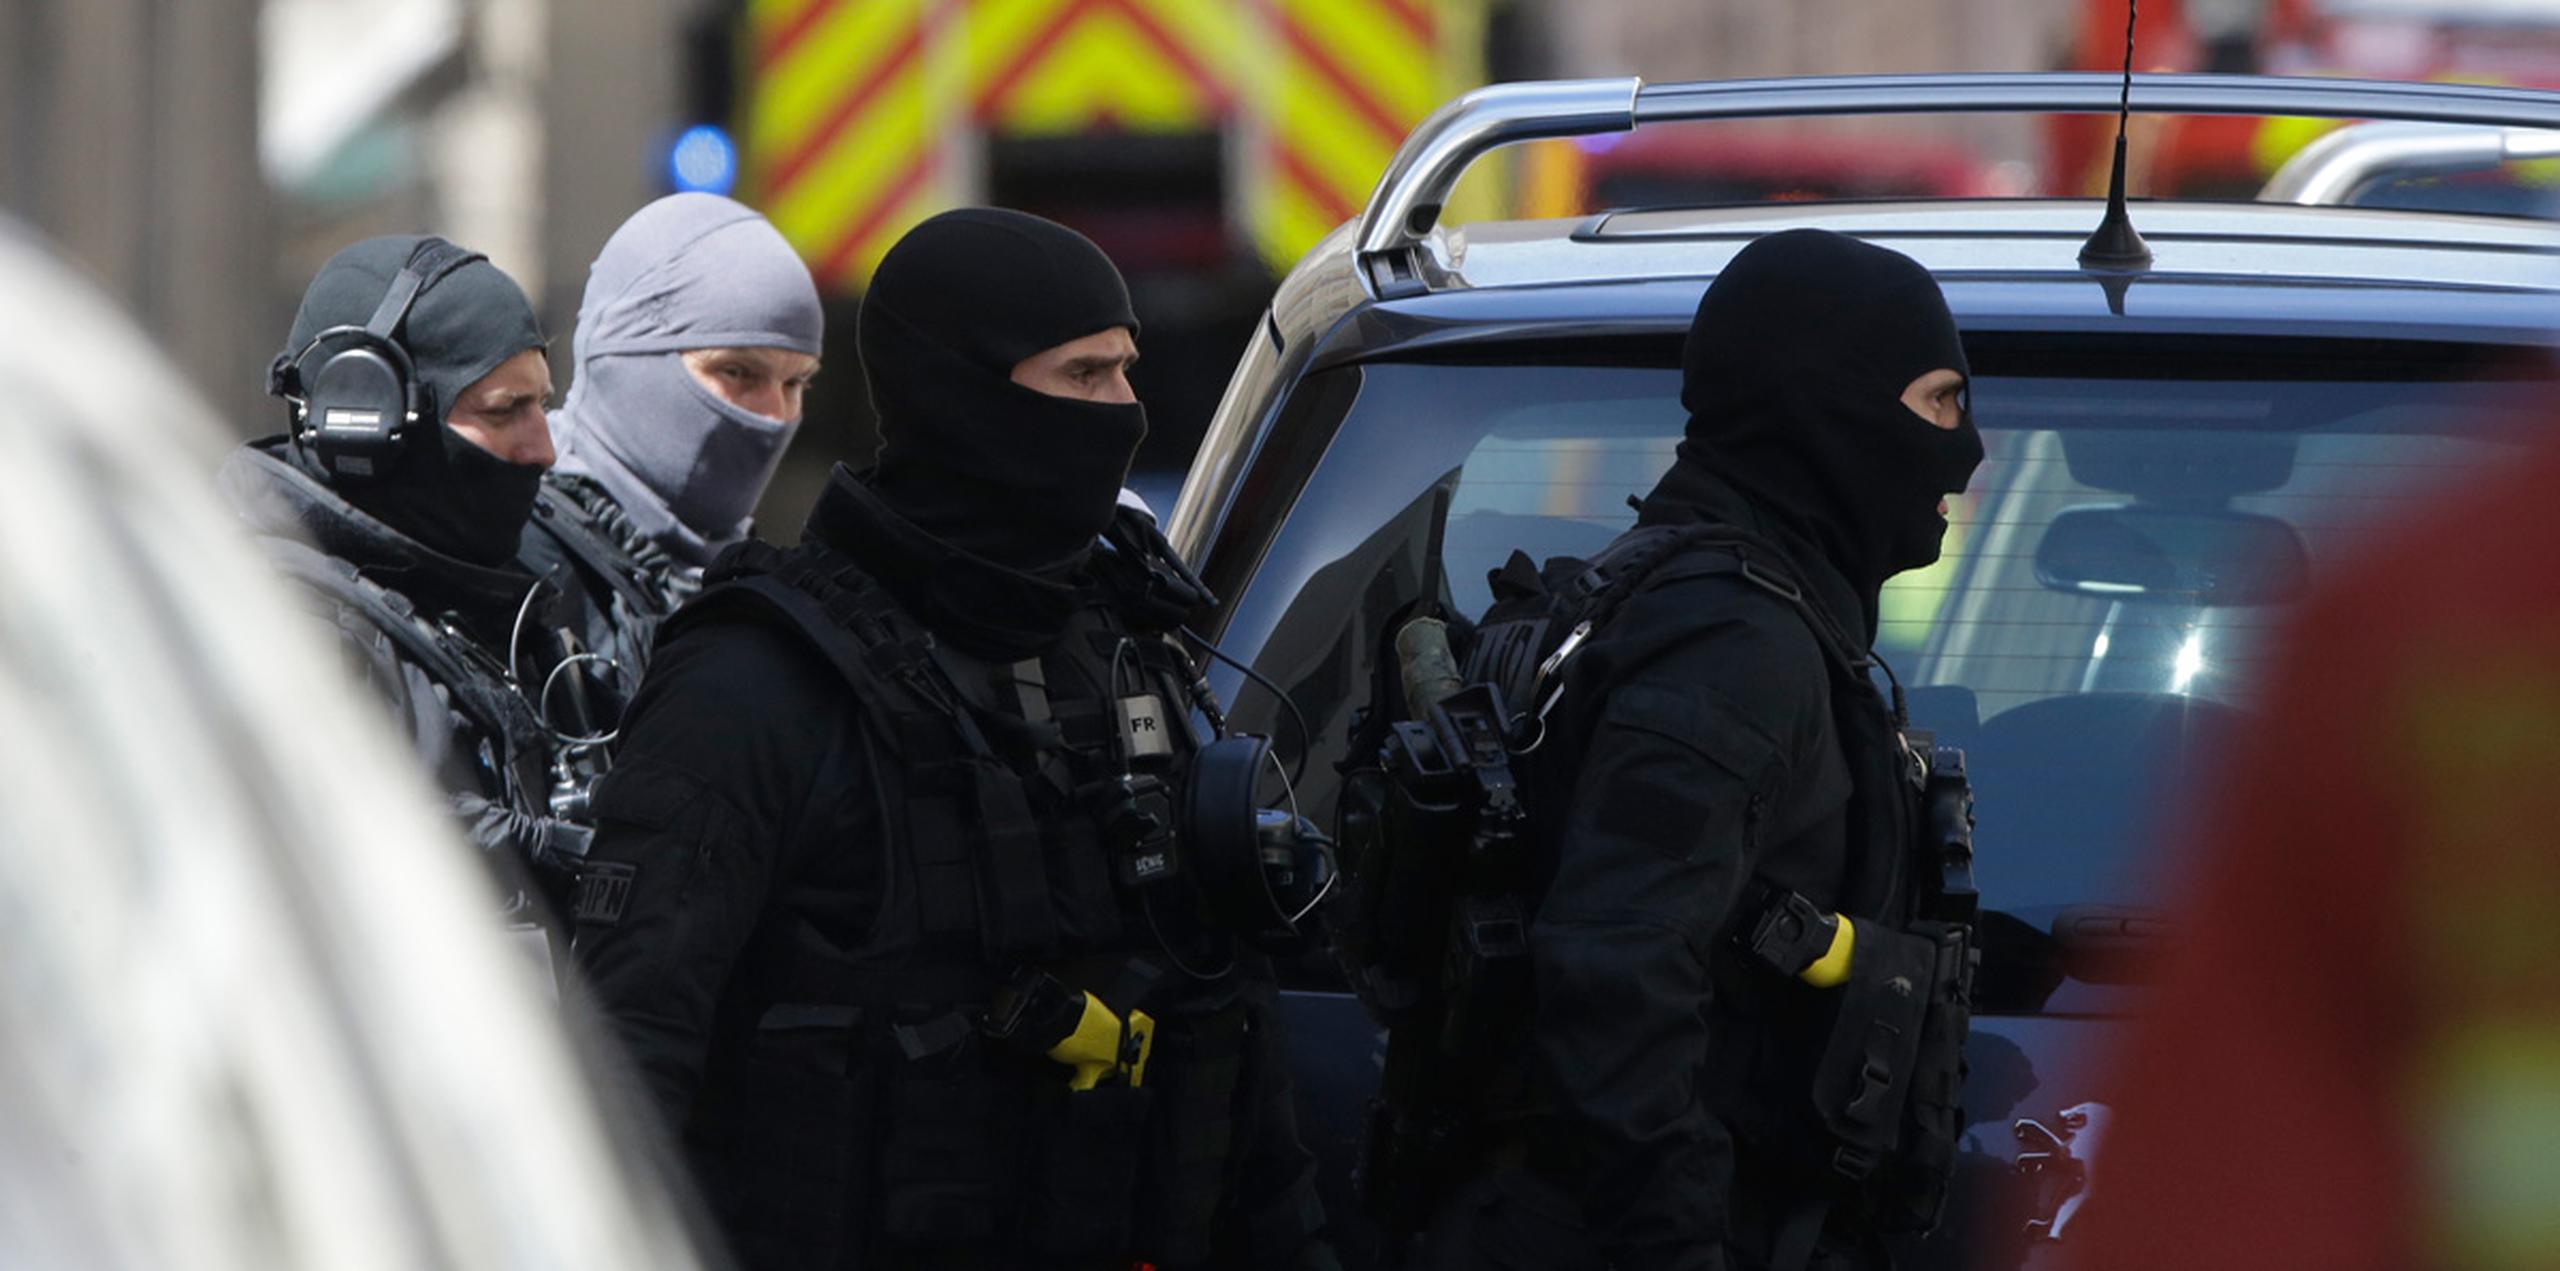 Los arrestos se practicaron en la ciudad de Marsella, en el sur del país. (AP)